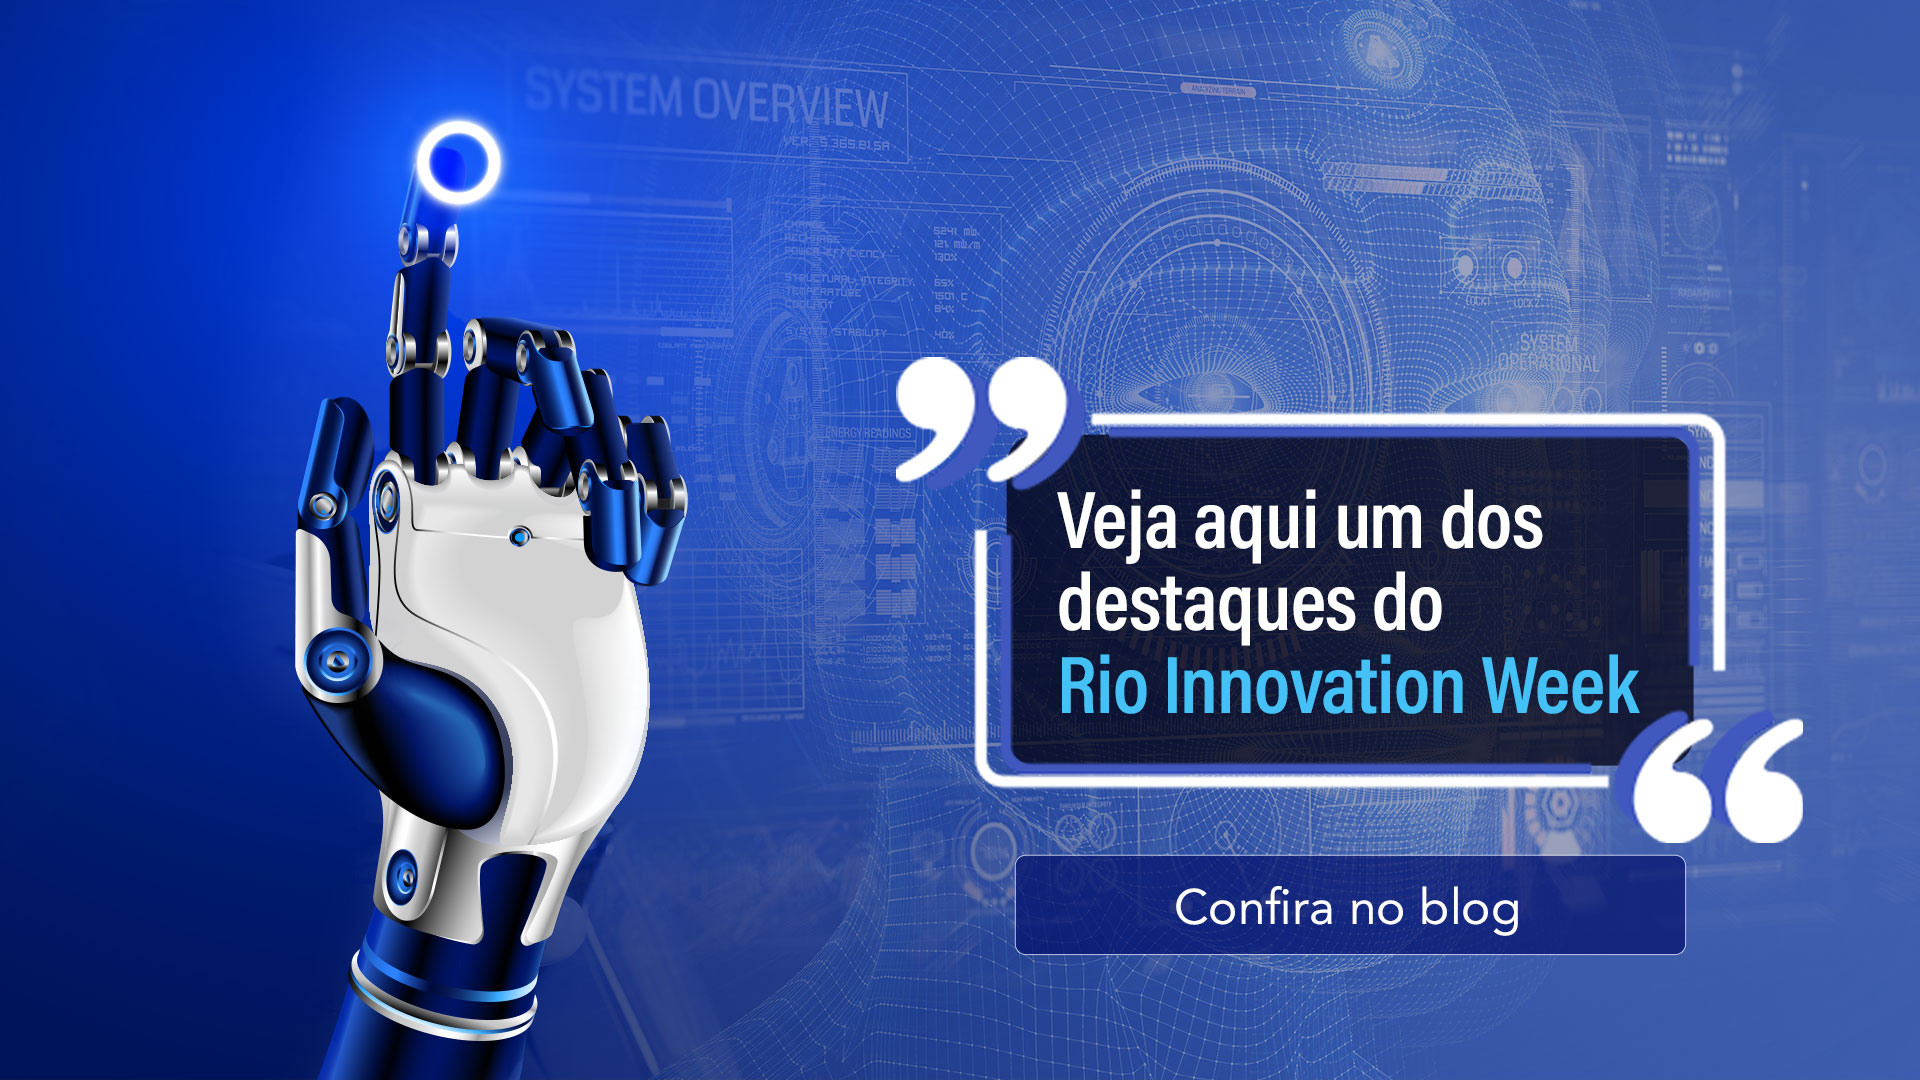 Veja aqui um dos destaques do Rio Innovation Week